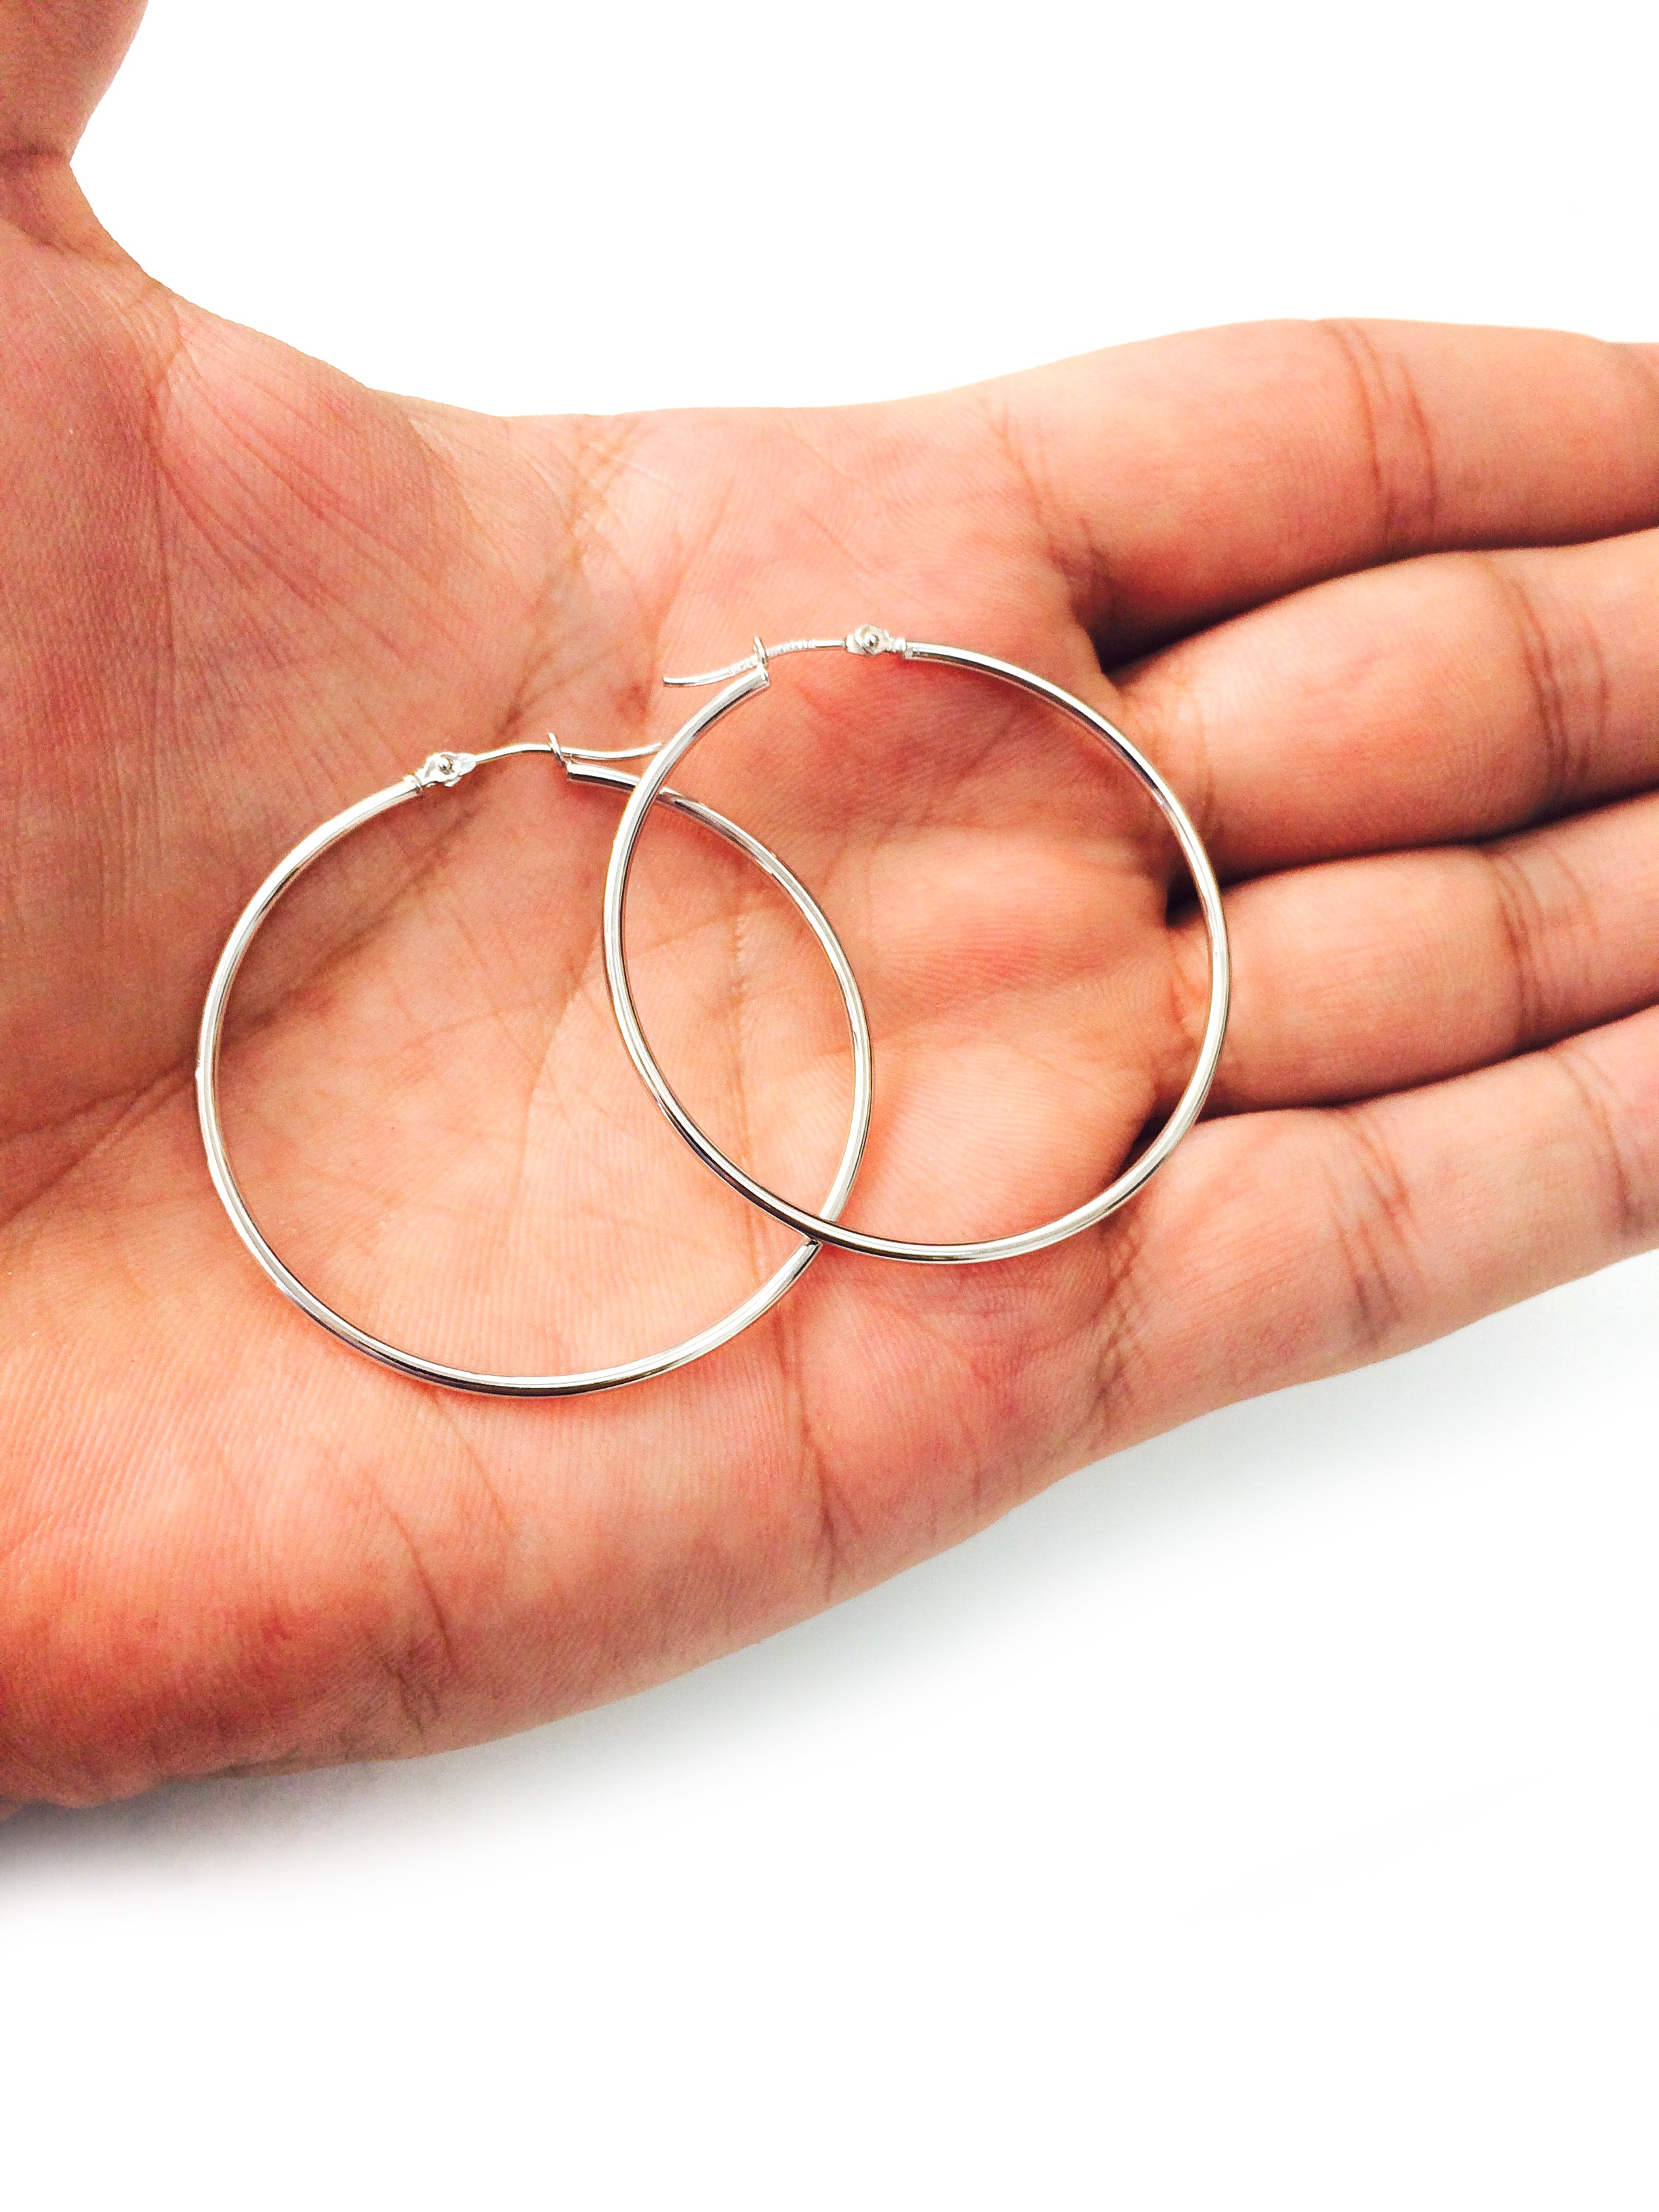 10k White Gold 1.5mm Shiny Round Tube Hoop Earrings fine designer jewelry for men and women